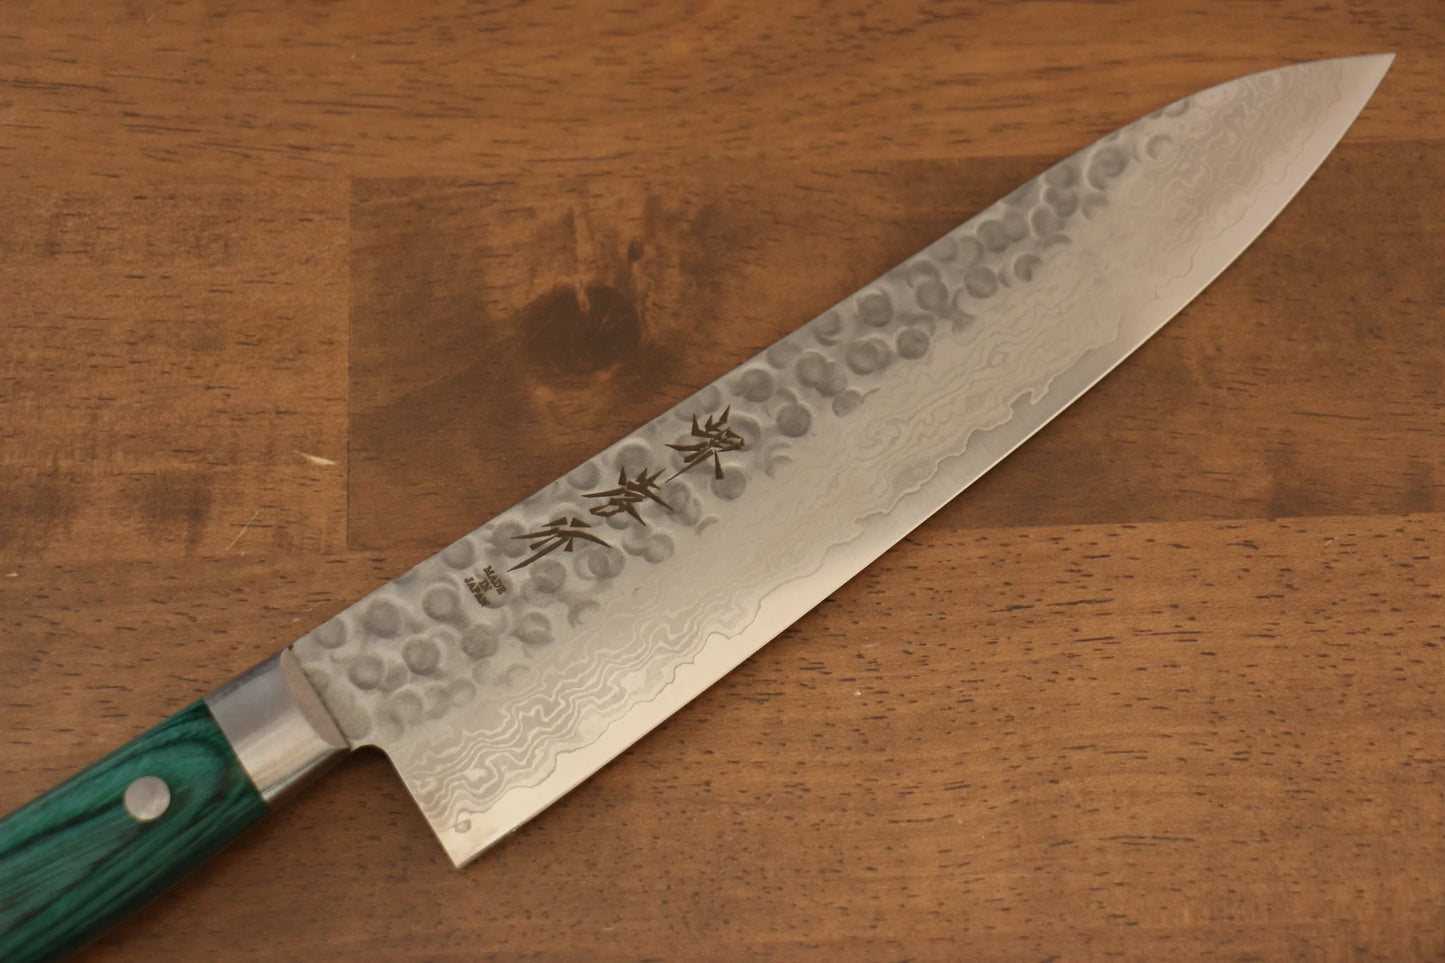 Hochwertiges japanisches Messer - Sakai Takayuki Mehrzweckmesser Gyuto Damaststahl VG10 33 Lagen 210 mm